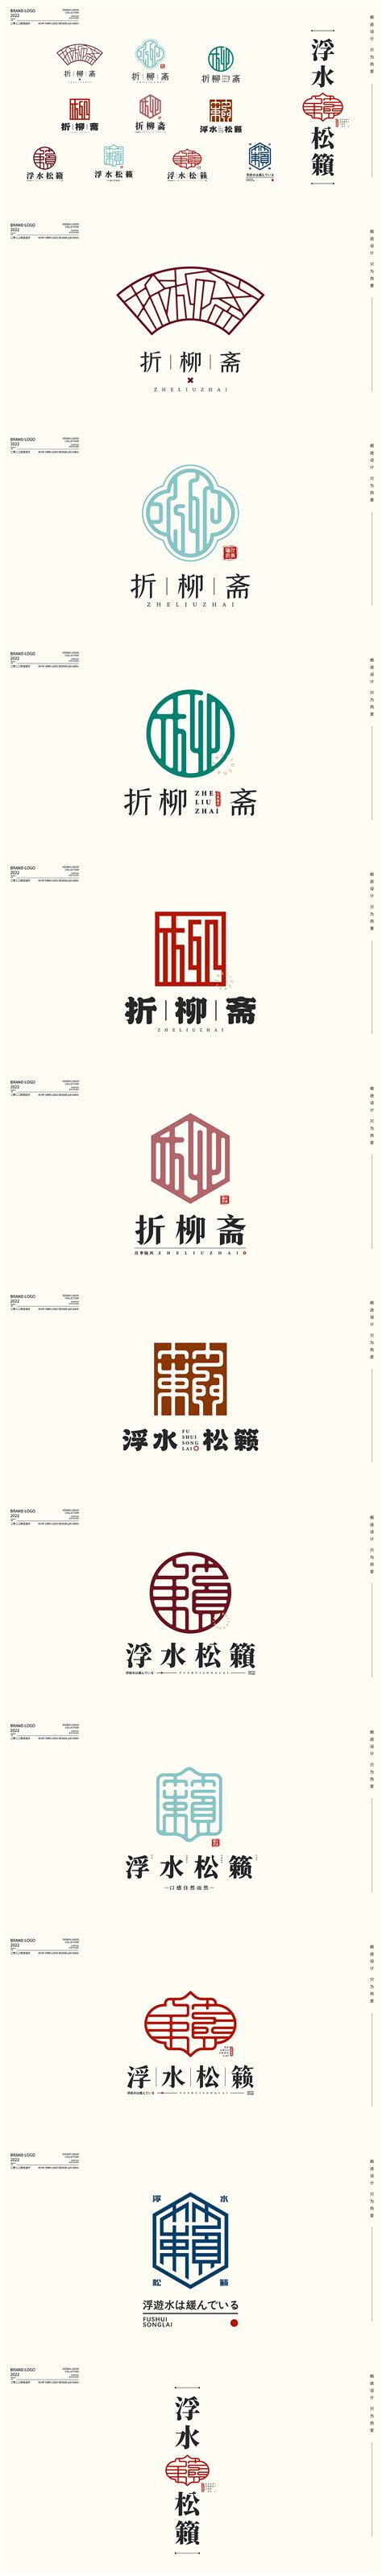 黄红色古风线条组合服装公司logo创意服饰中文logo - 模板 - Canva可画